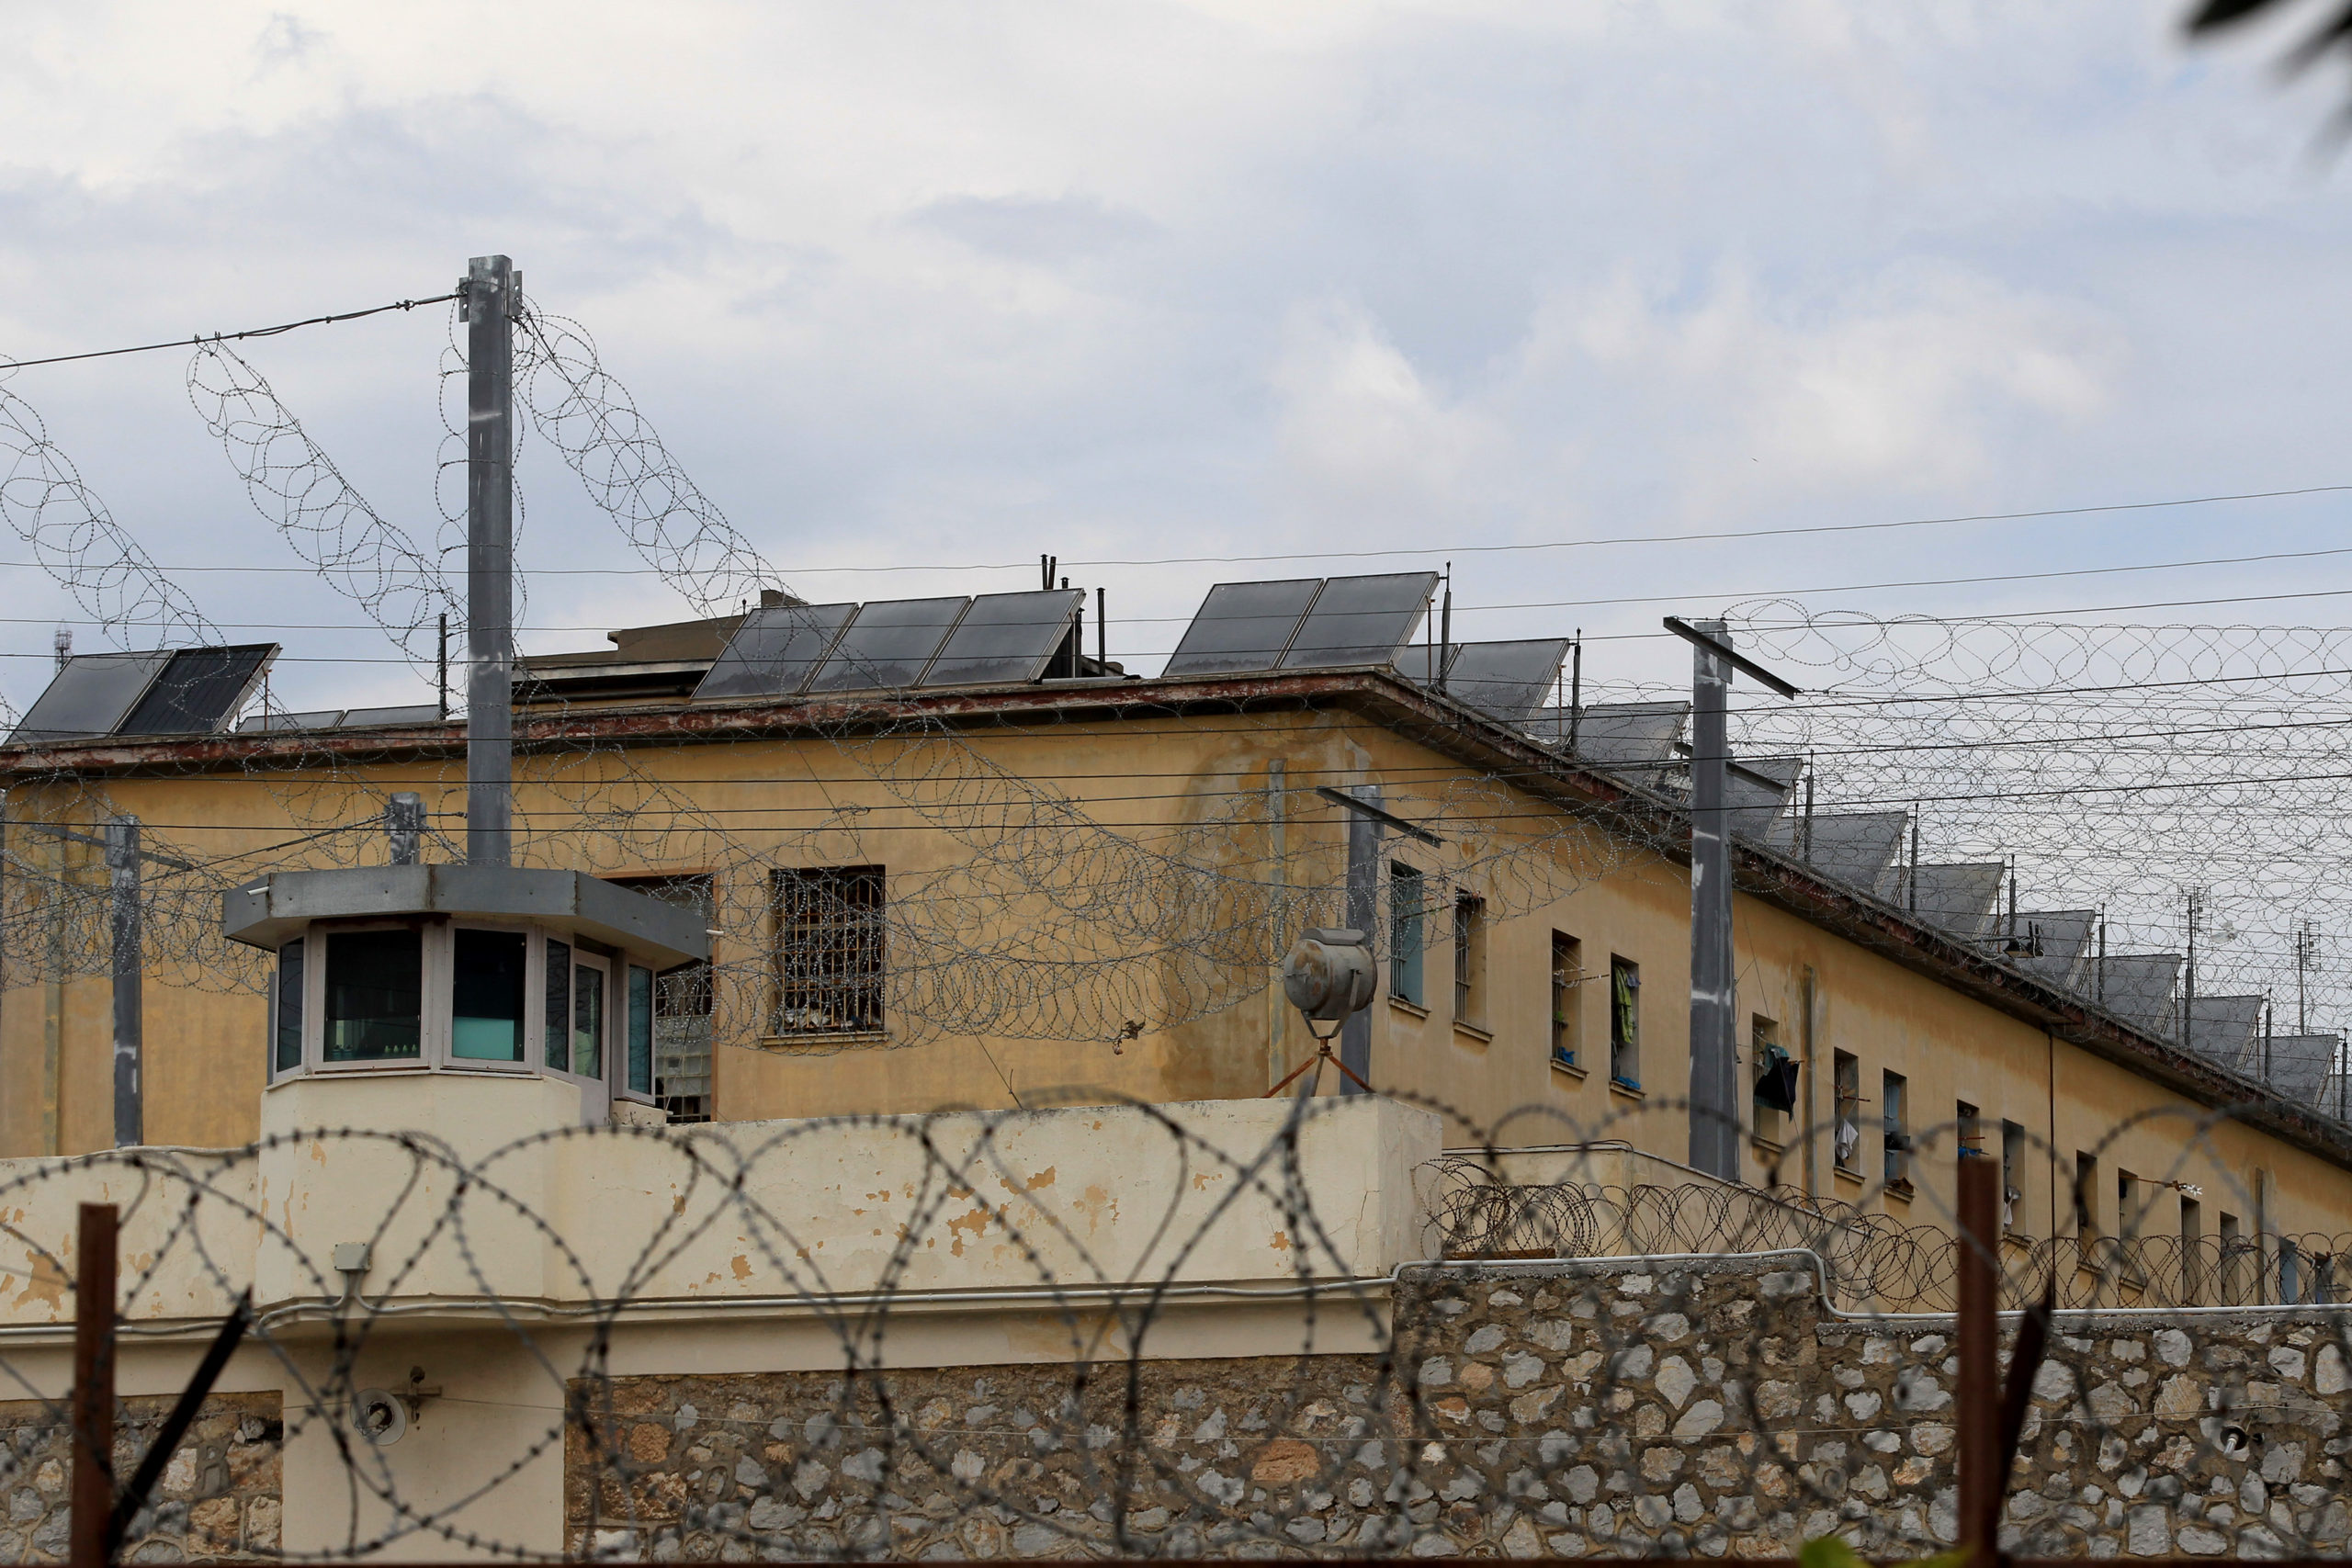 Έφοδος της ΕΛ.ΑΣ. στις φυλακές Κορυδαλλού – Εντοπίστηκαν κινητά, ναρκωτικά και μαχαίρι